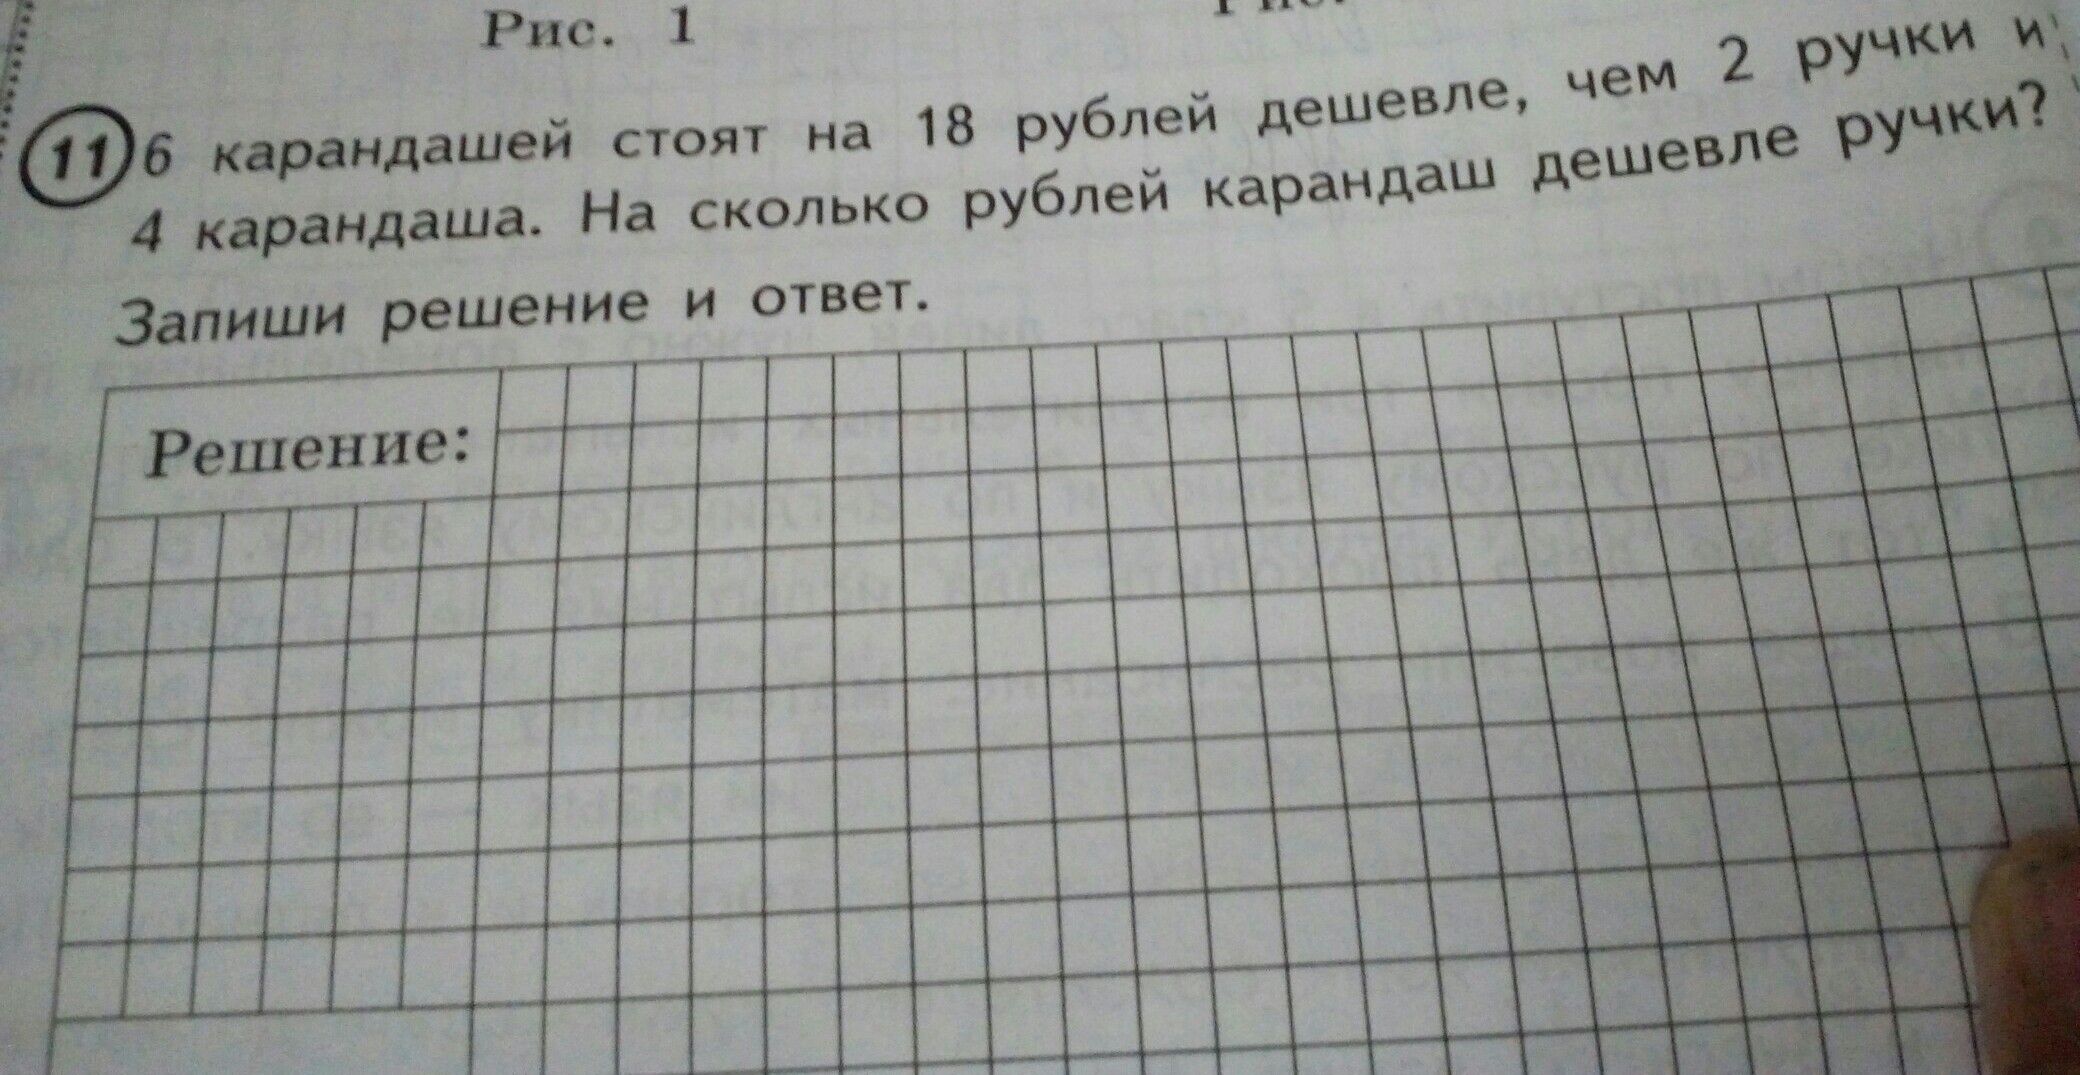 5 карандашей на 15 рублей дешевле. 6 Карандашей стоят. 5 Карандашей стоят. 5 Карандашей стоят на 16. Карандаш дешевле ручки на 2 рубля.